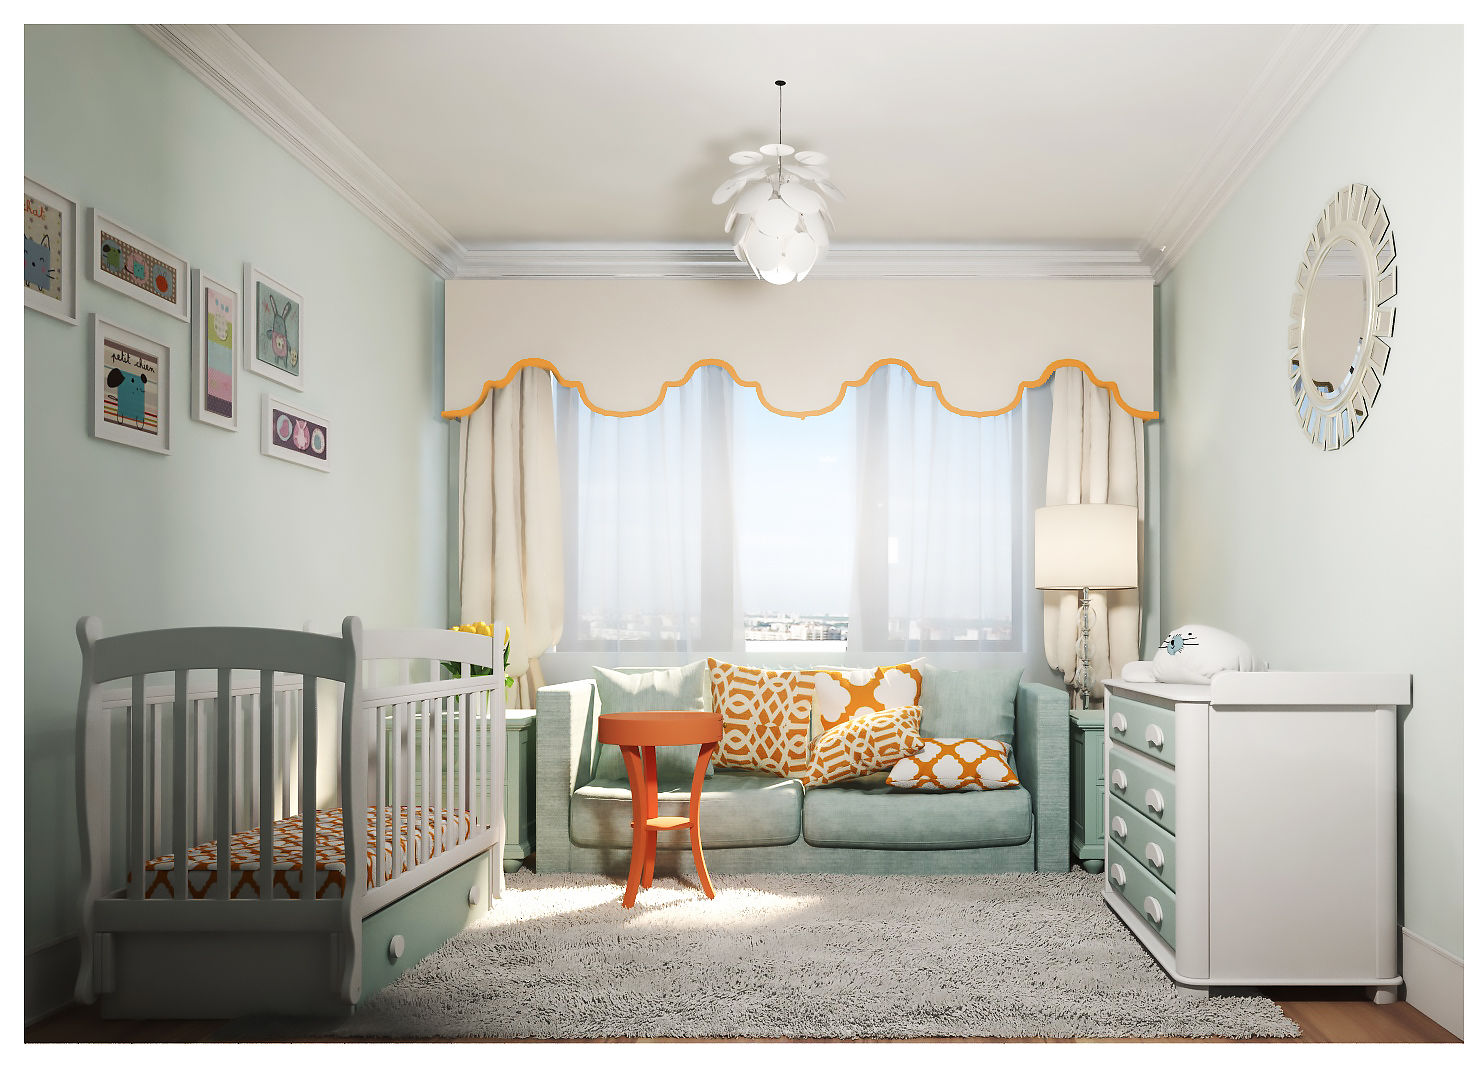 3-bedroom Apartment, Moscow , Alexander Krivov Alexander Krivov Cuartos infantiles de estilo clásico